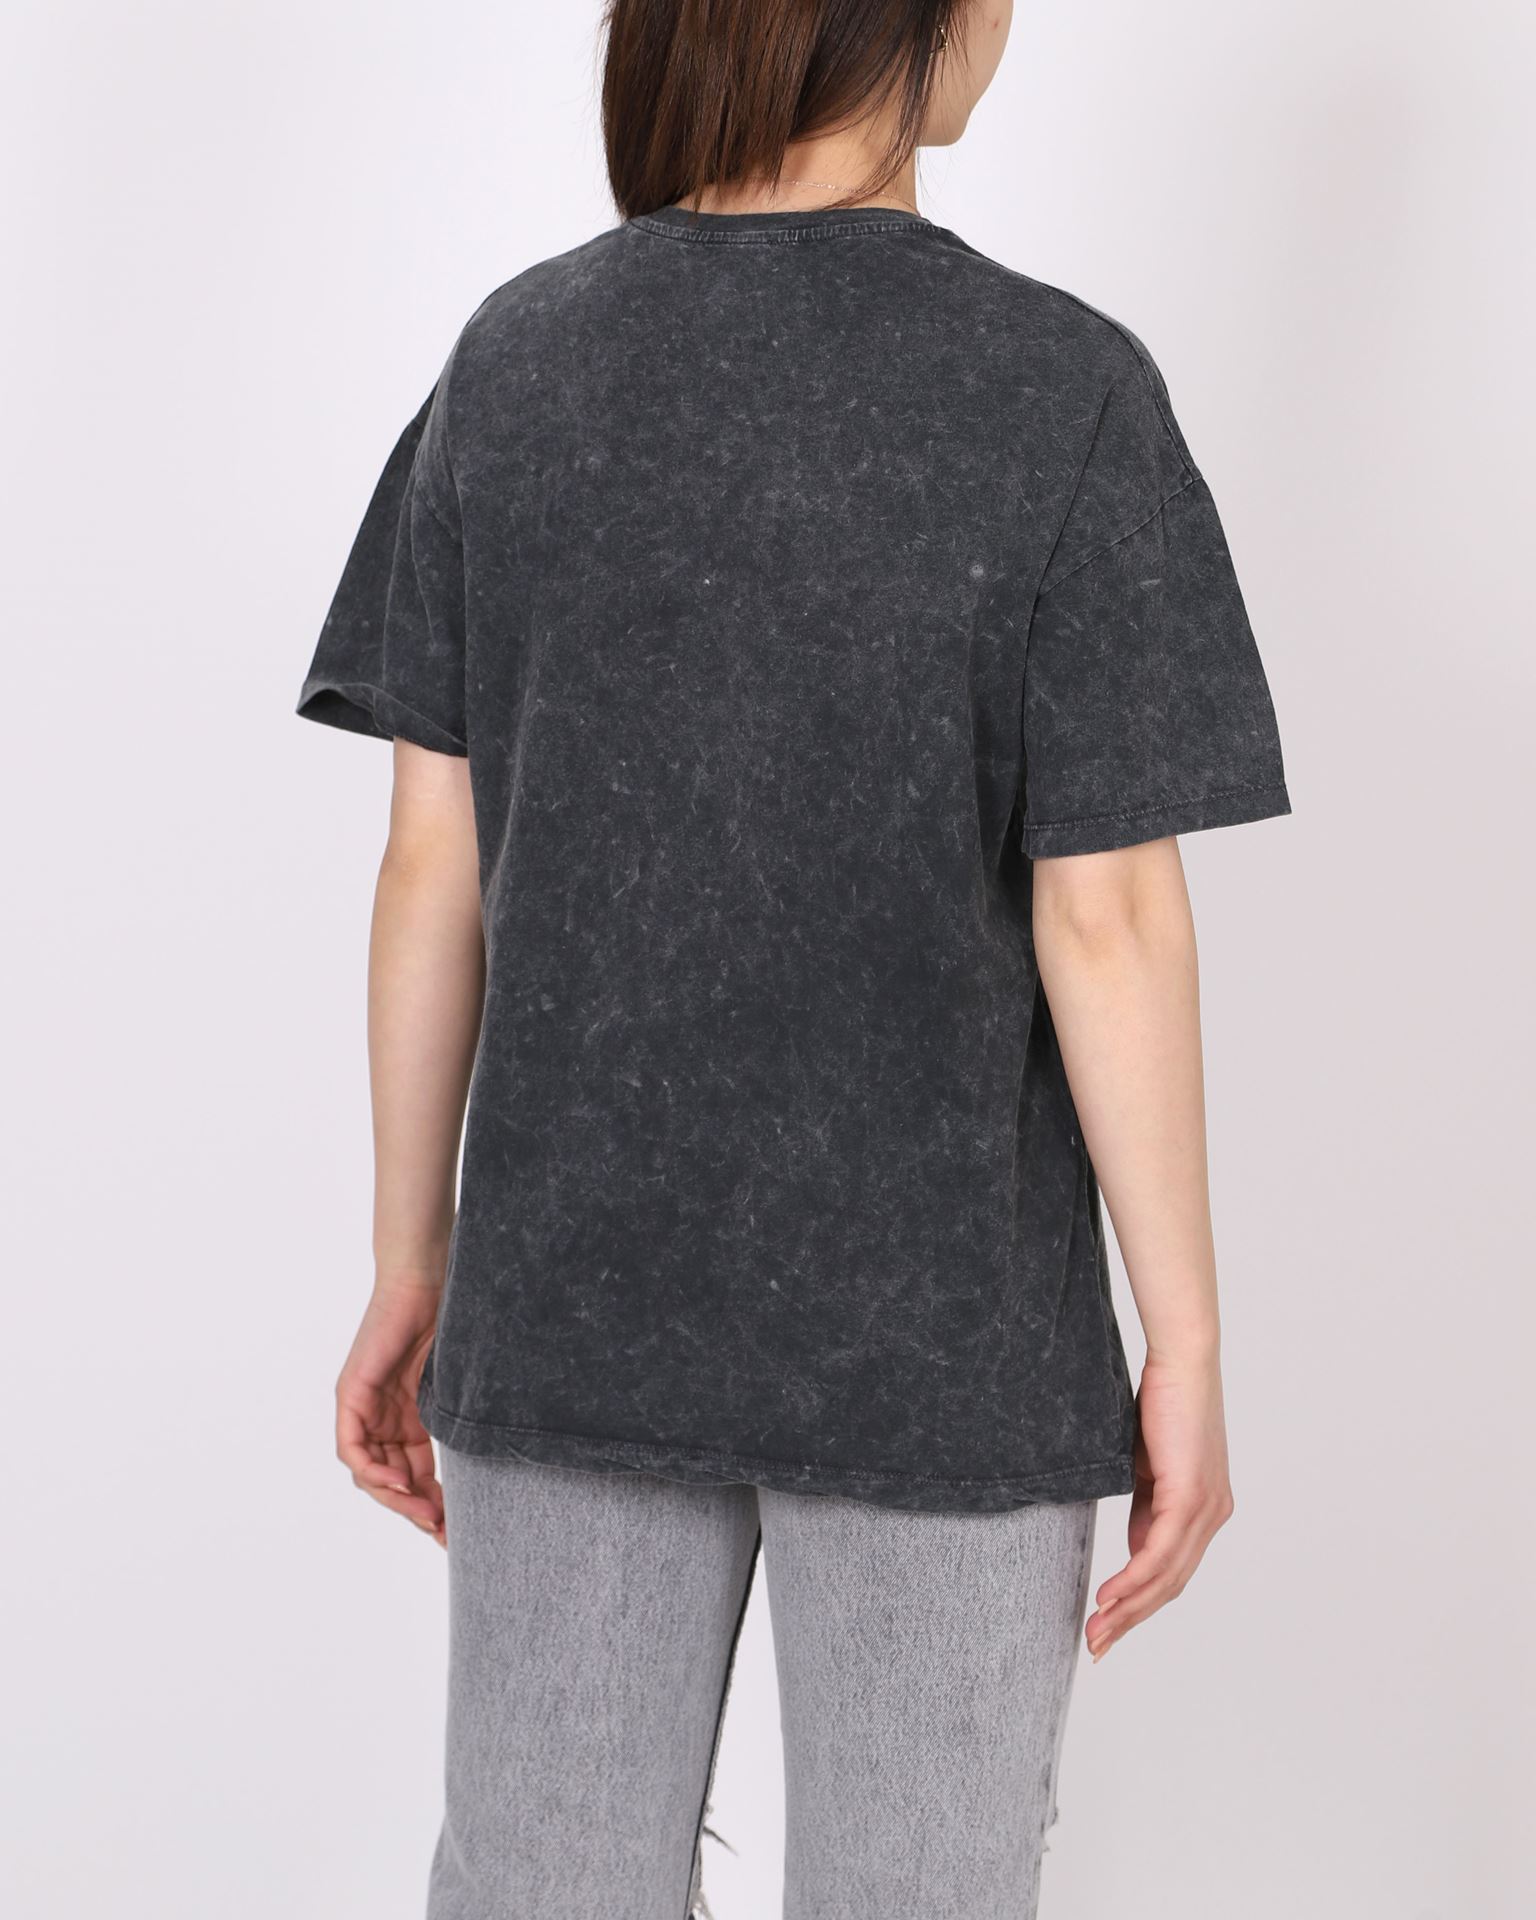 Antrasit Batik Yıkamalı Baskılı T-shirt TSH366